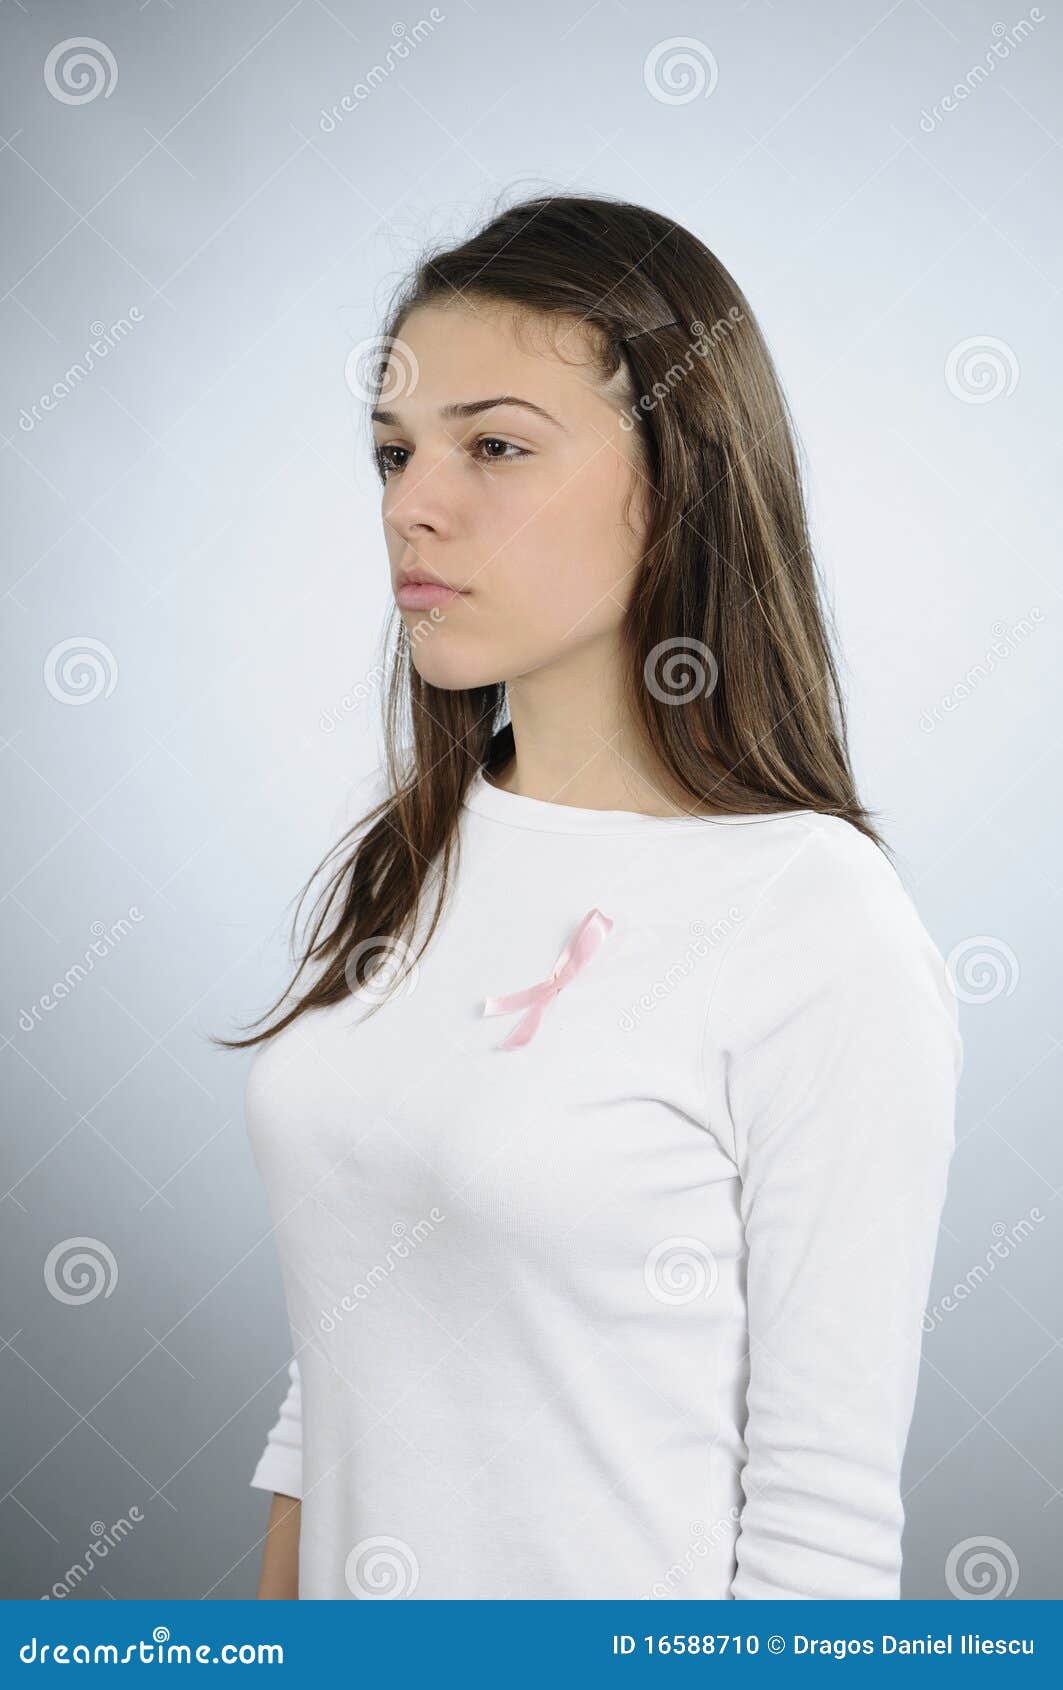 Teen Breast Pics